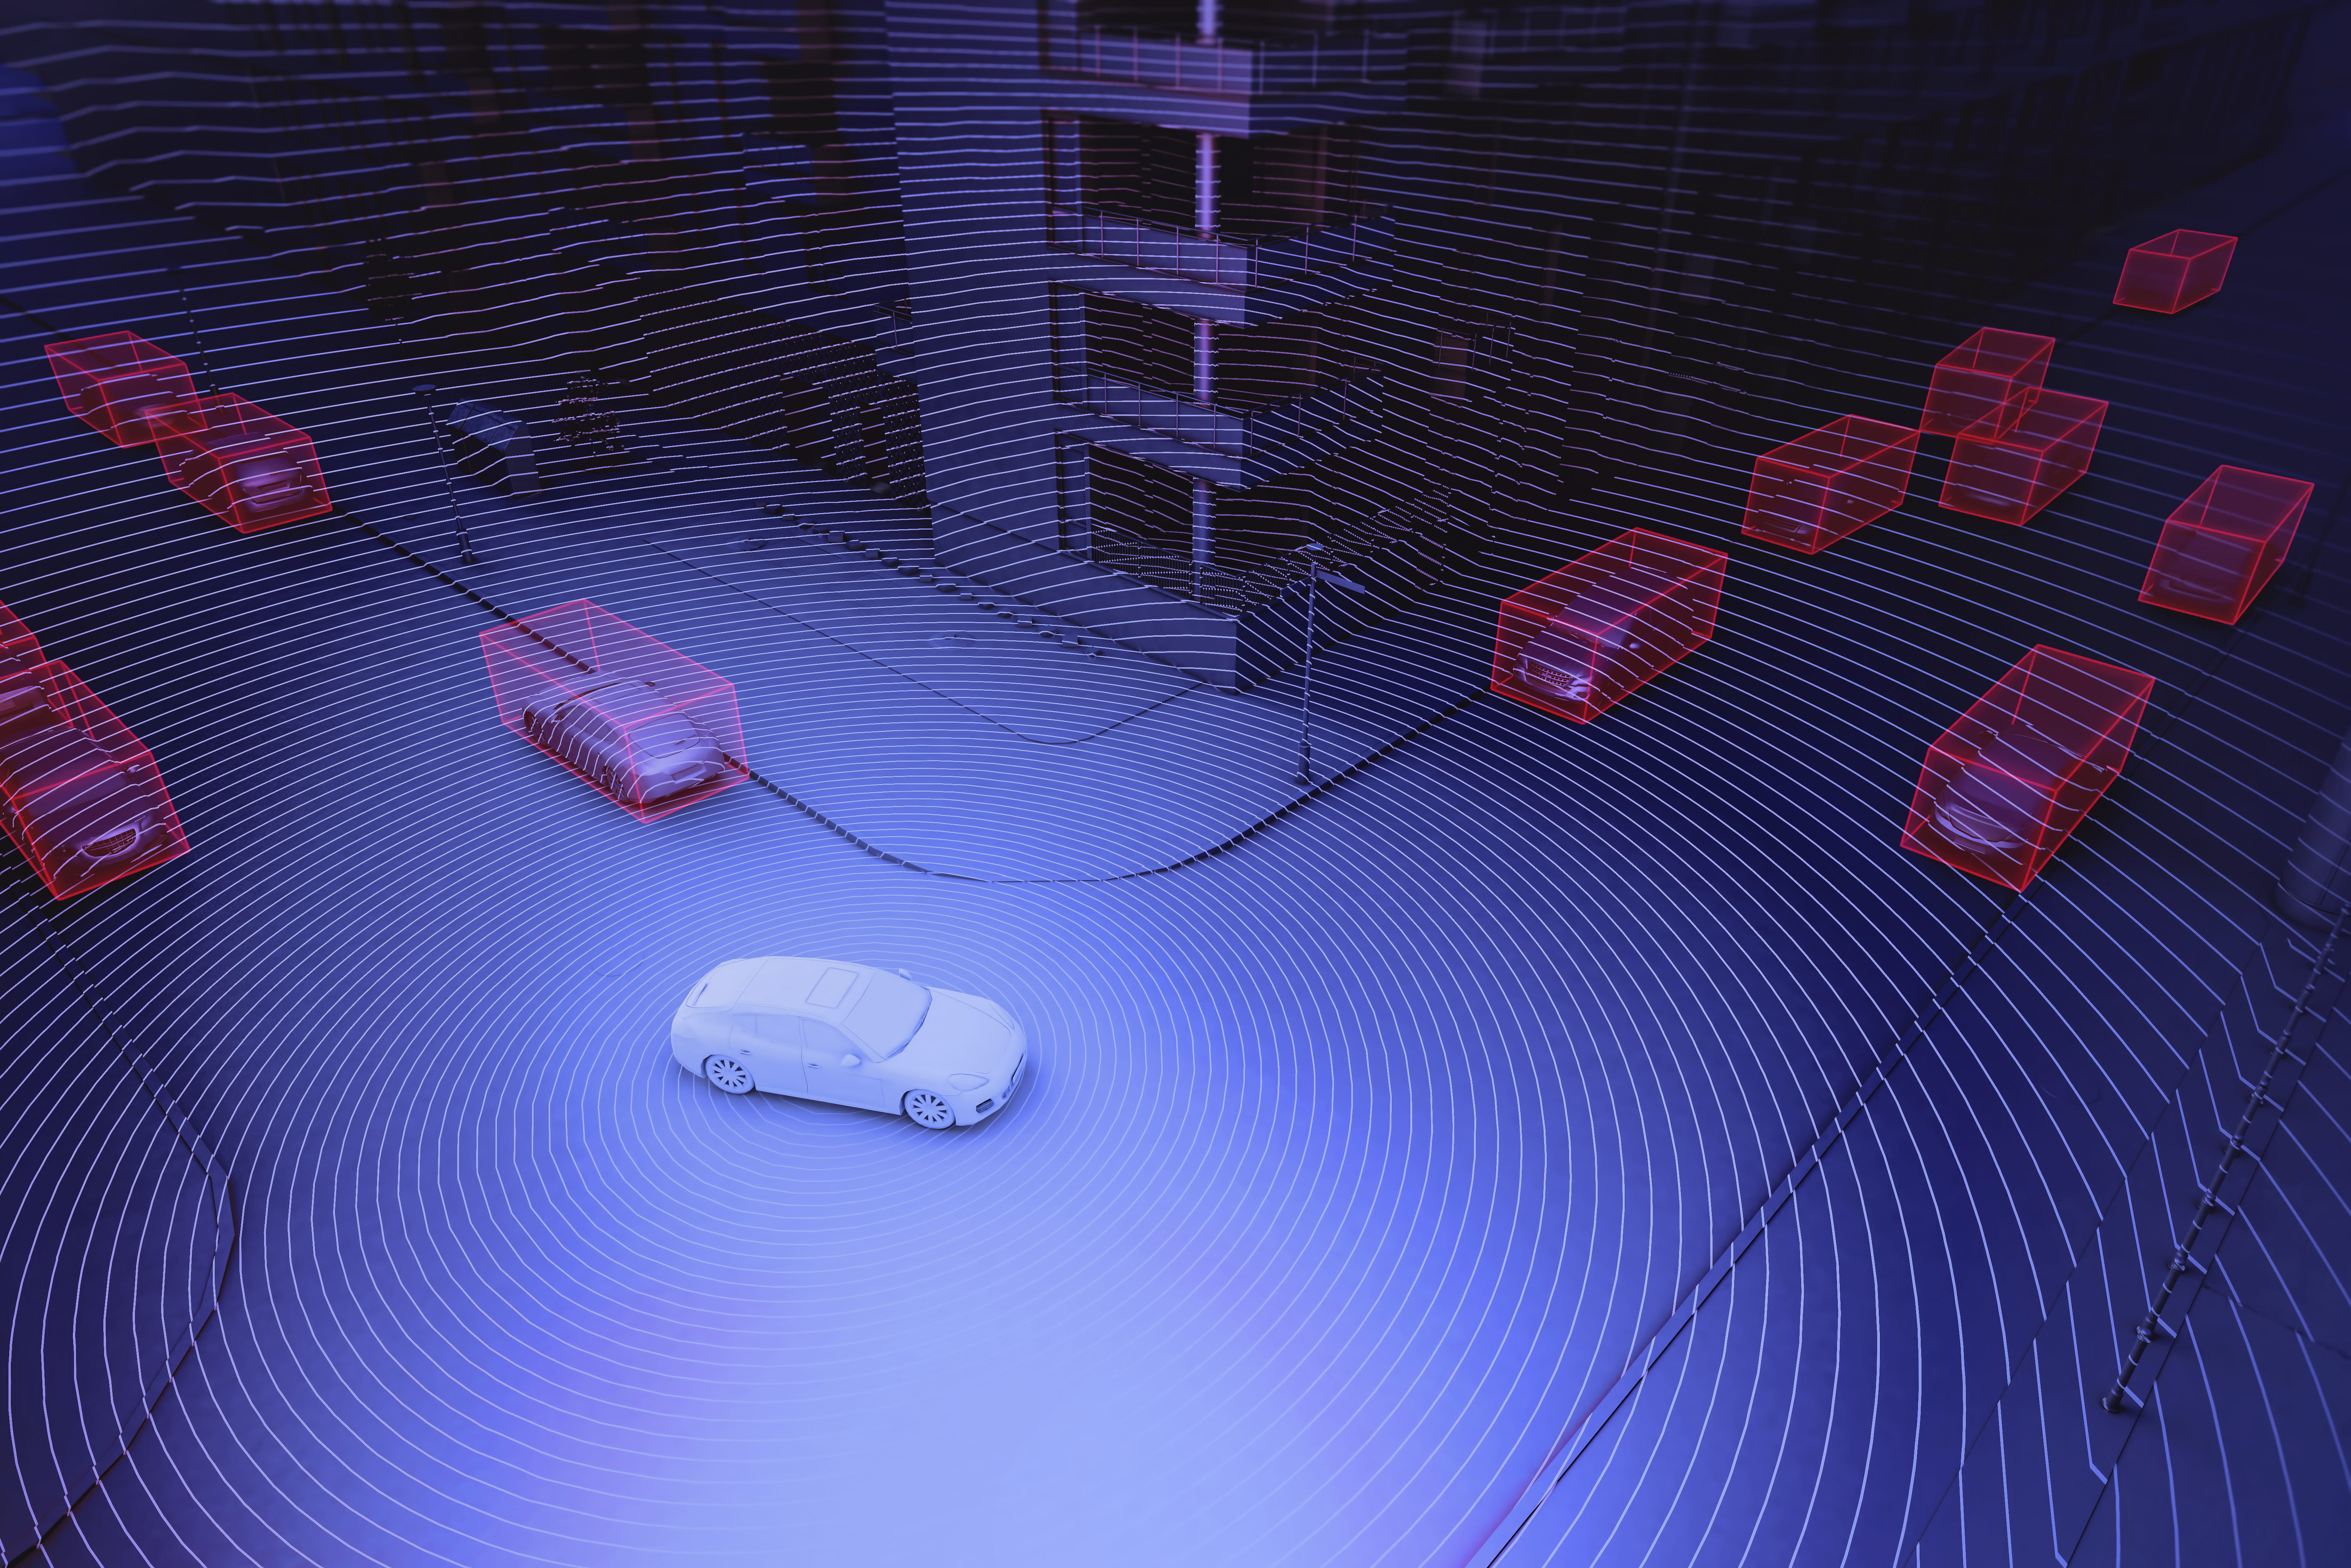 Biztonságosabbak lesznek az utak, ha emberek helyett algoritmusok vezetik az autókat?